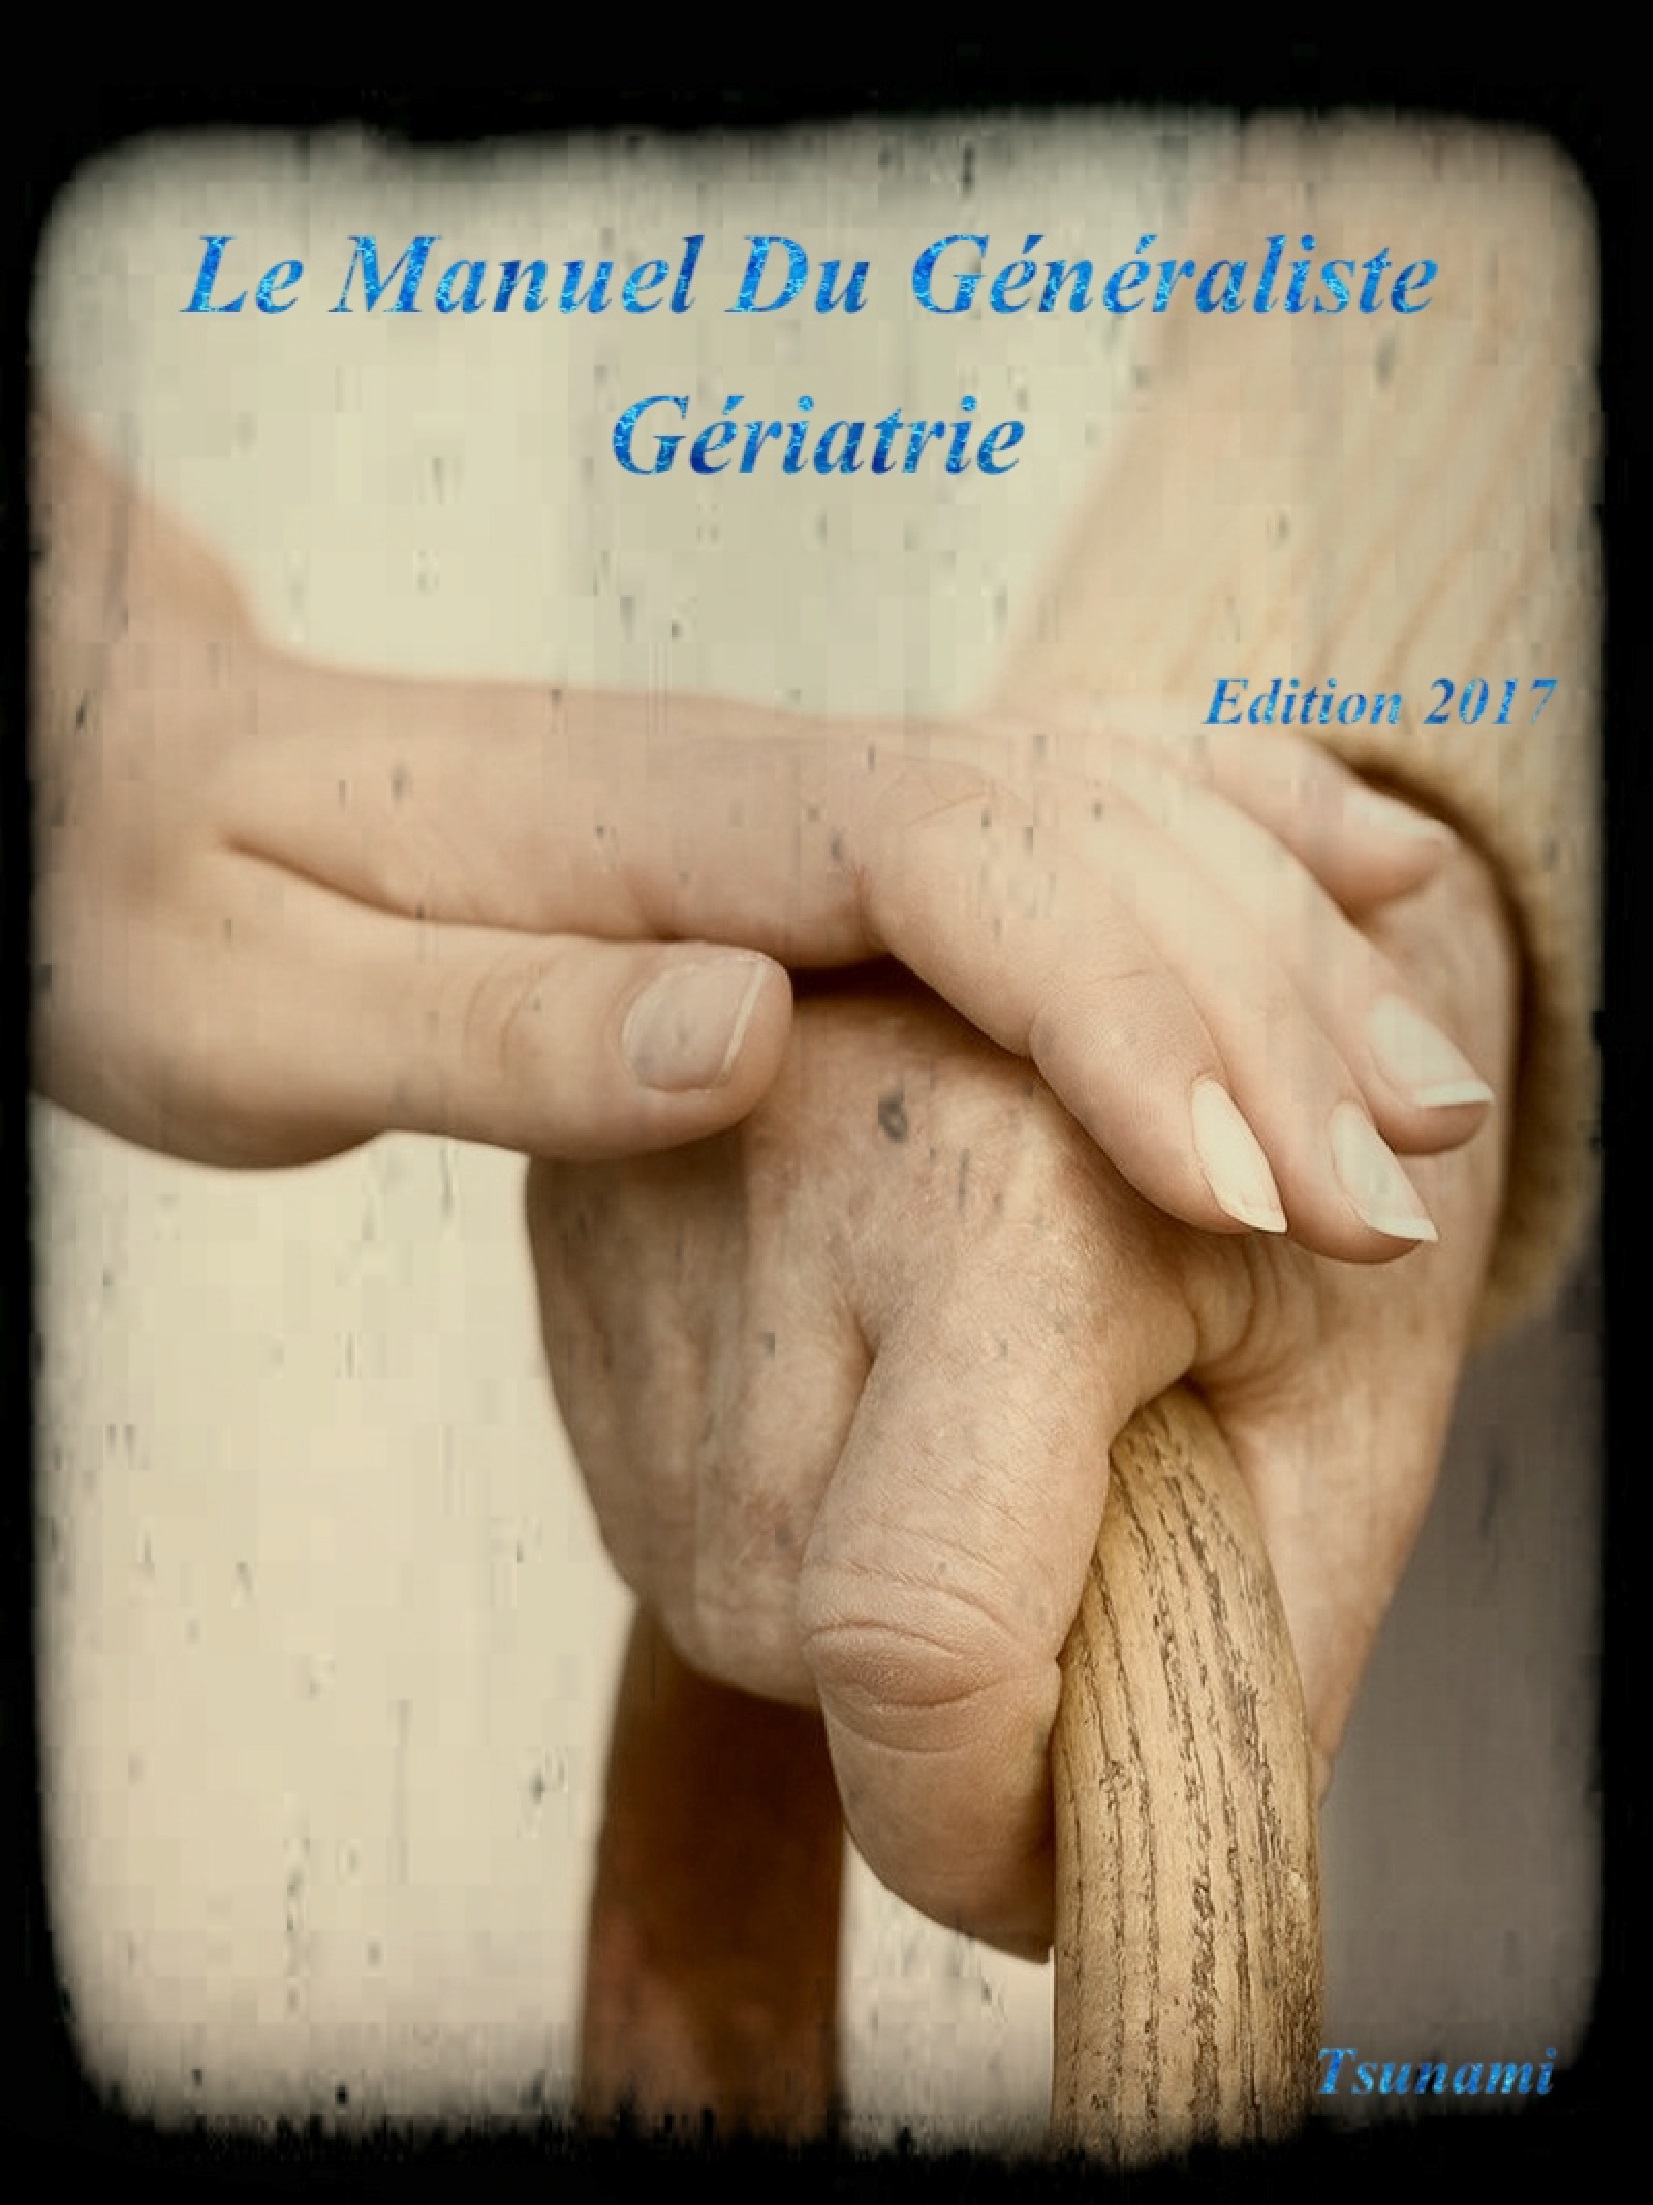 Livres Médicales - Le Manuel Du Généraliste 2017 Gériatrie - Page 2 Le_man16